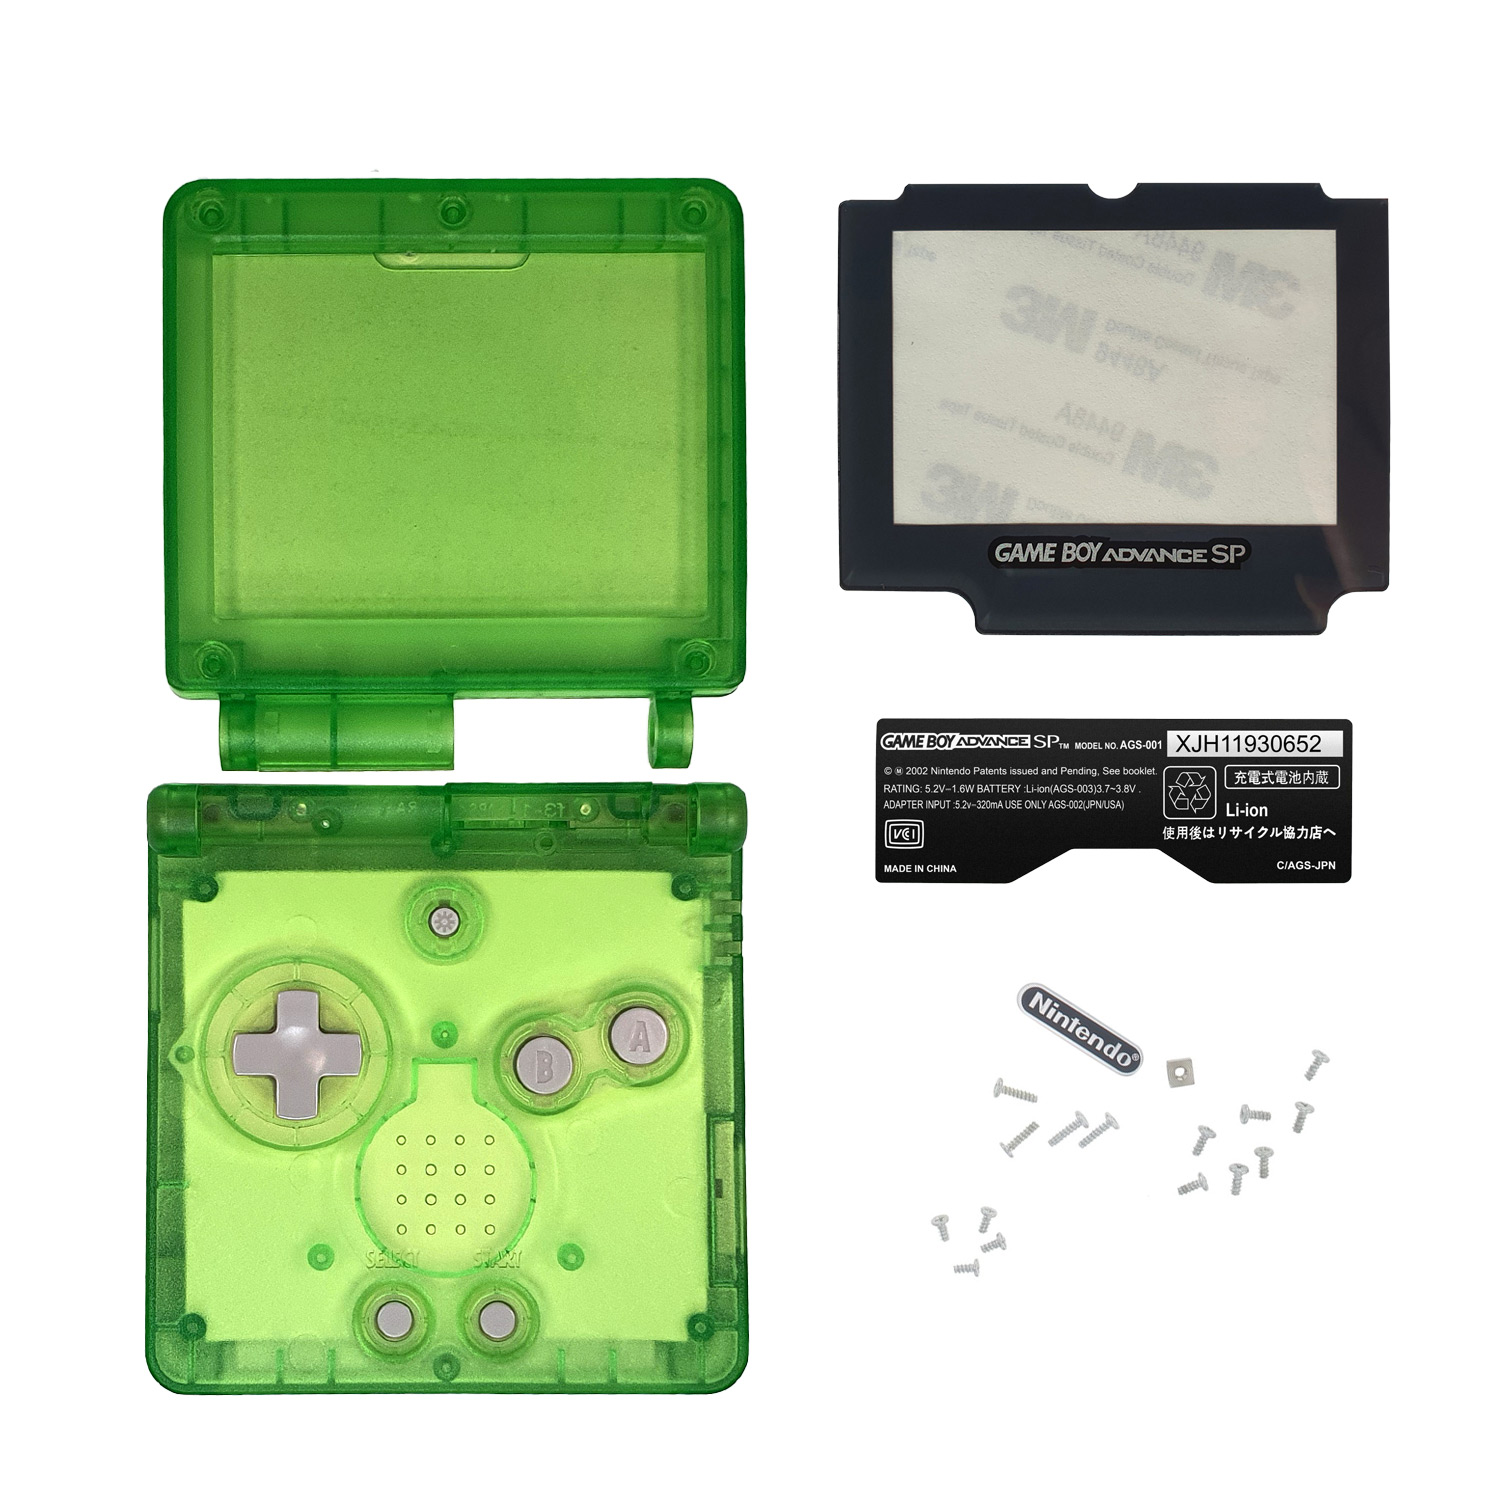 Gehäuse (Clear Green) für Game Boy Advance SP